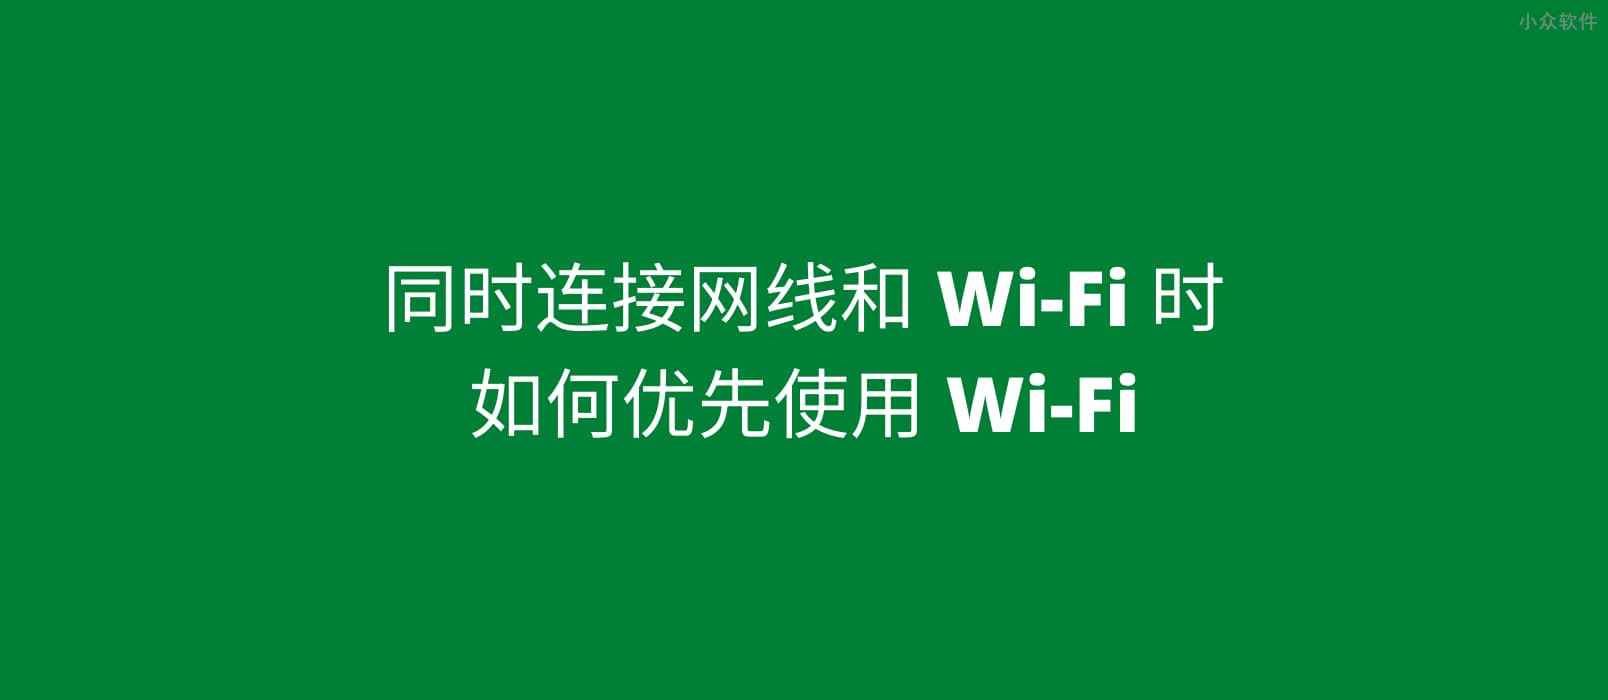 同时连接网线和 Wi-Fi，如何优先使用 Wi-Fi？试试接口跃点数